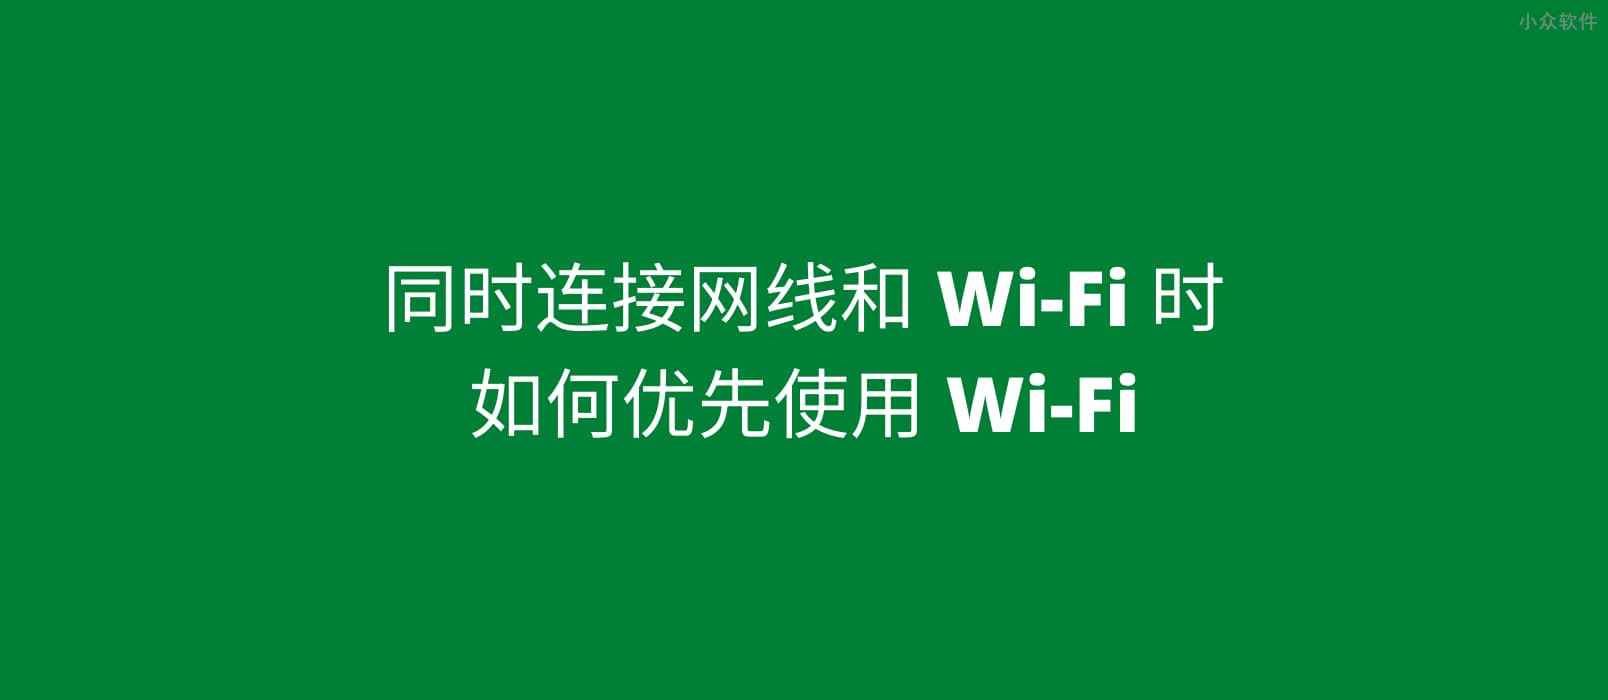 同时连接网线和 Wi-Fi，如何优先使用 Wi-Fi？试试接口跃点数